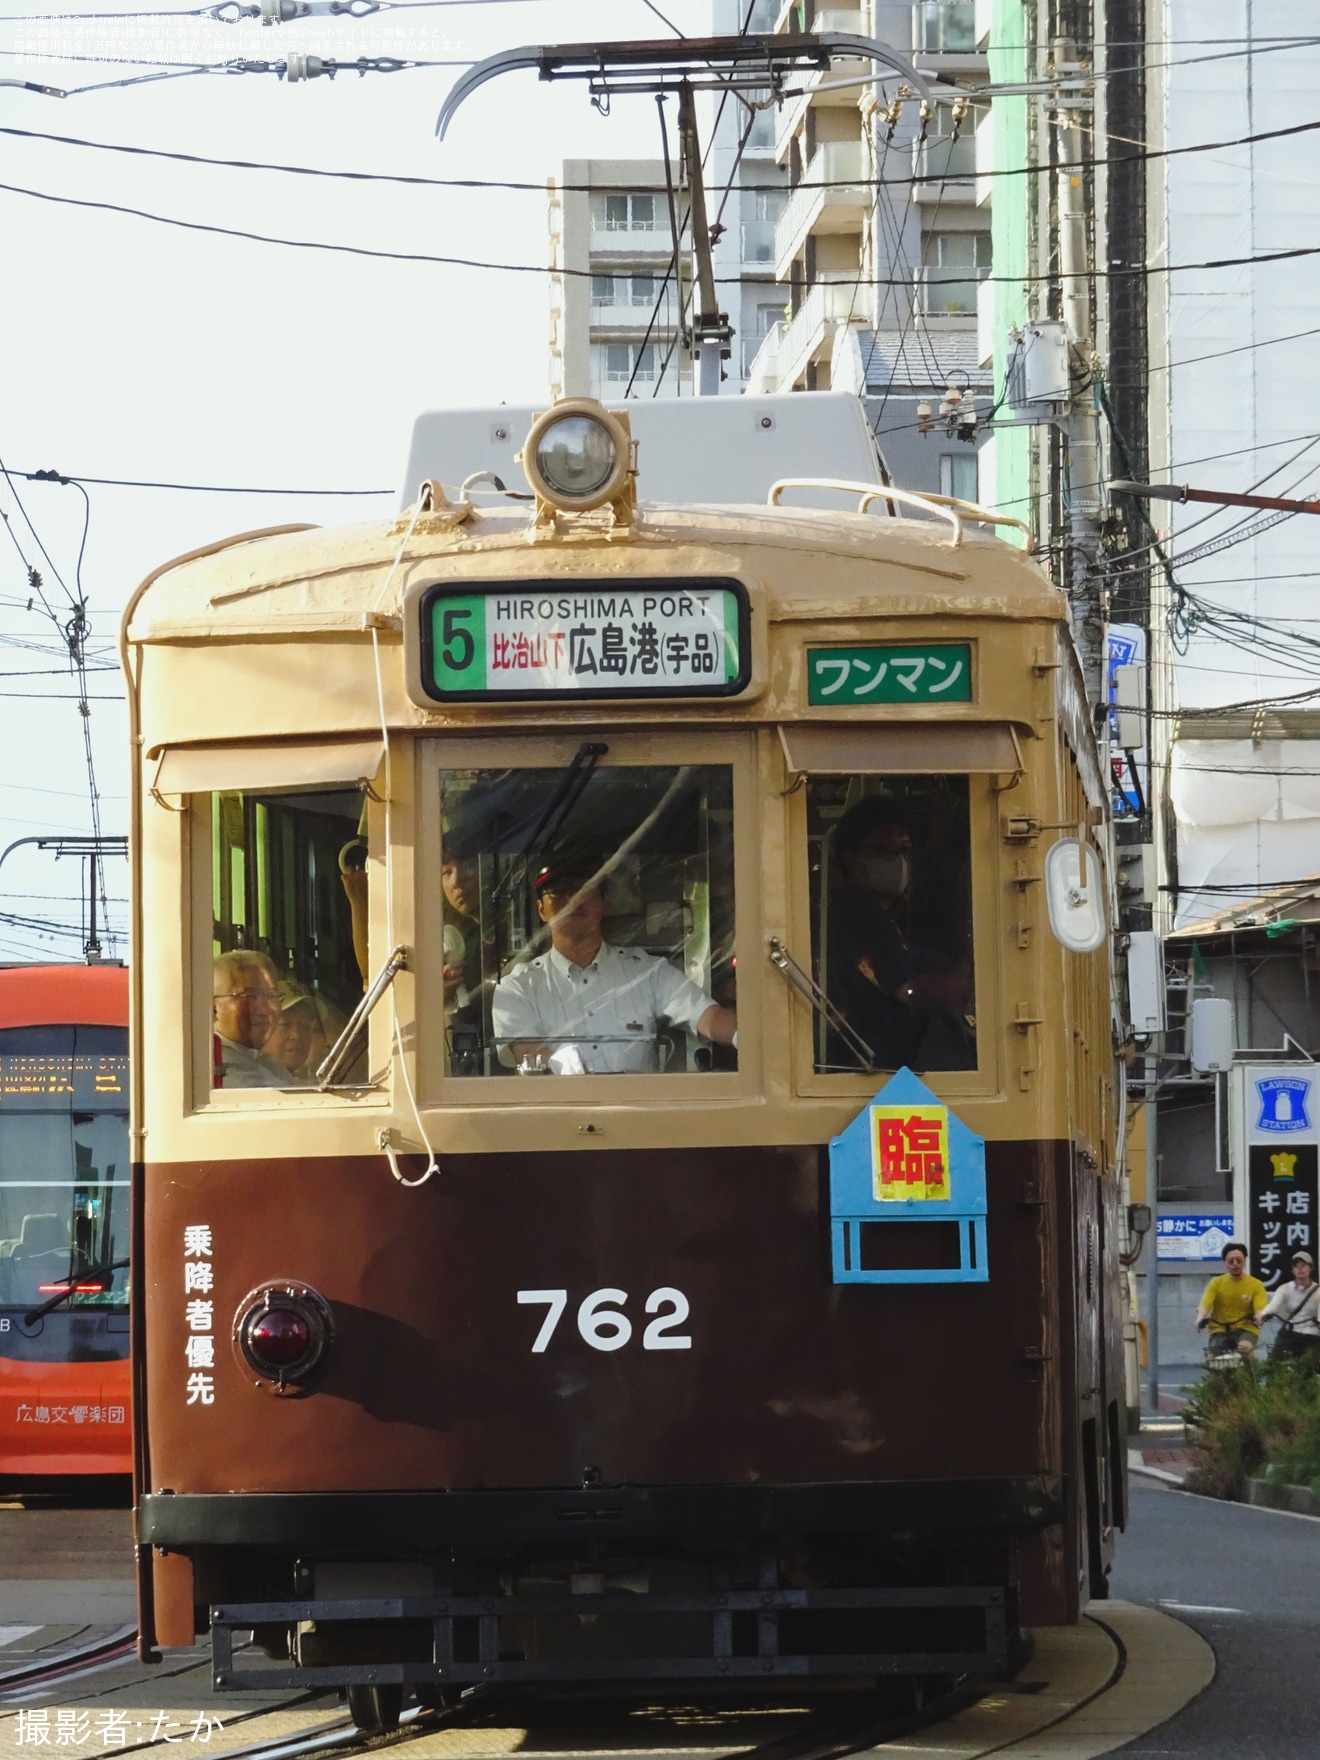 【広電】広島みなと夢花火大会の開催に伴う臨時列車の拡大写真